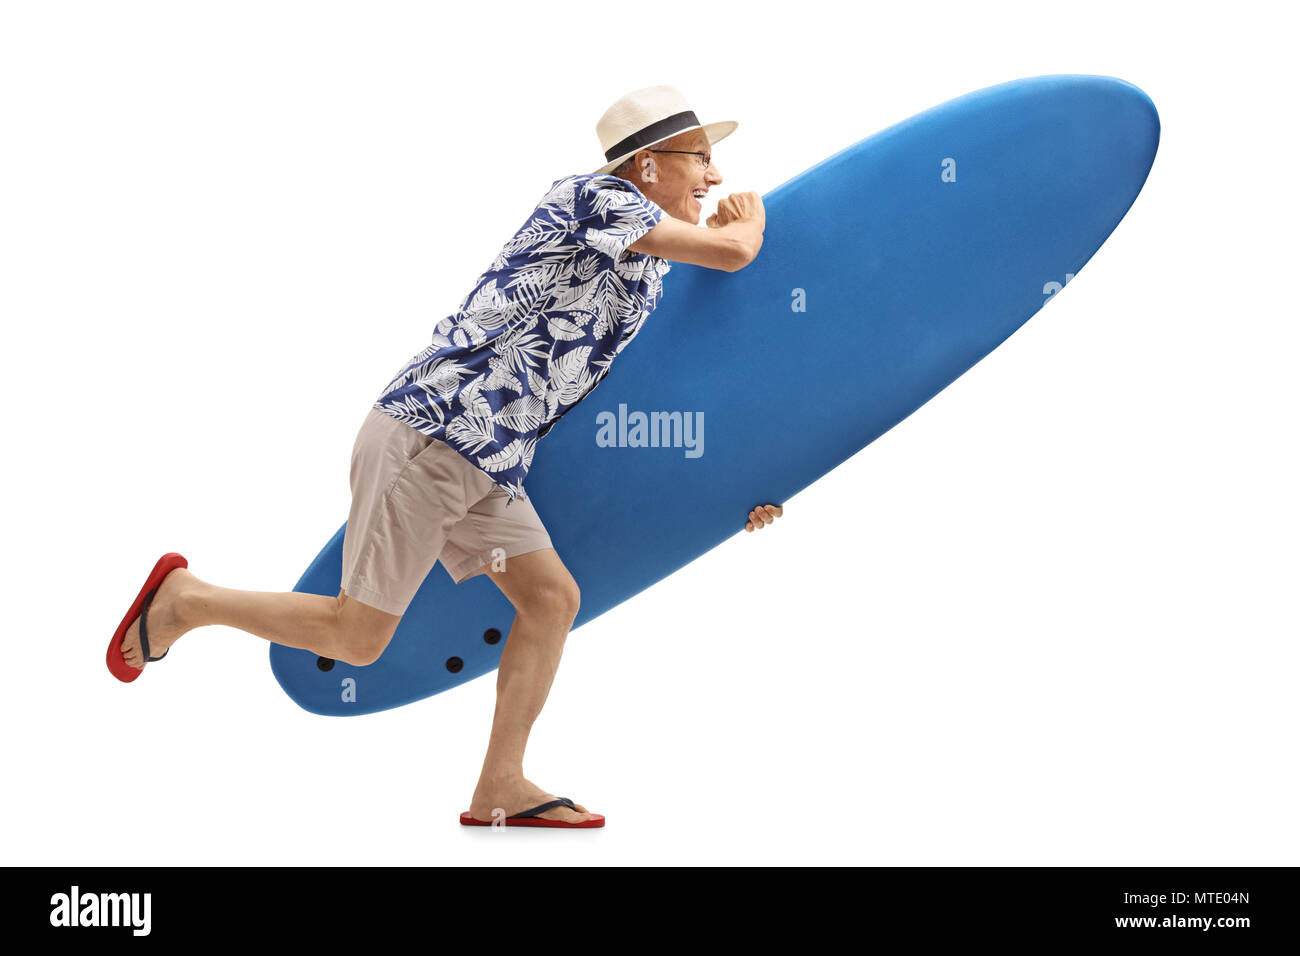 Profil de pleine longueur de balle avec un surf tourisme exécutant isolé sur fond blanc Banque D'Images